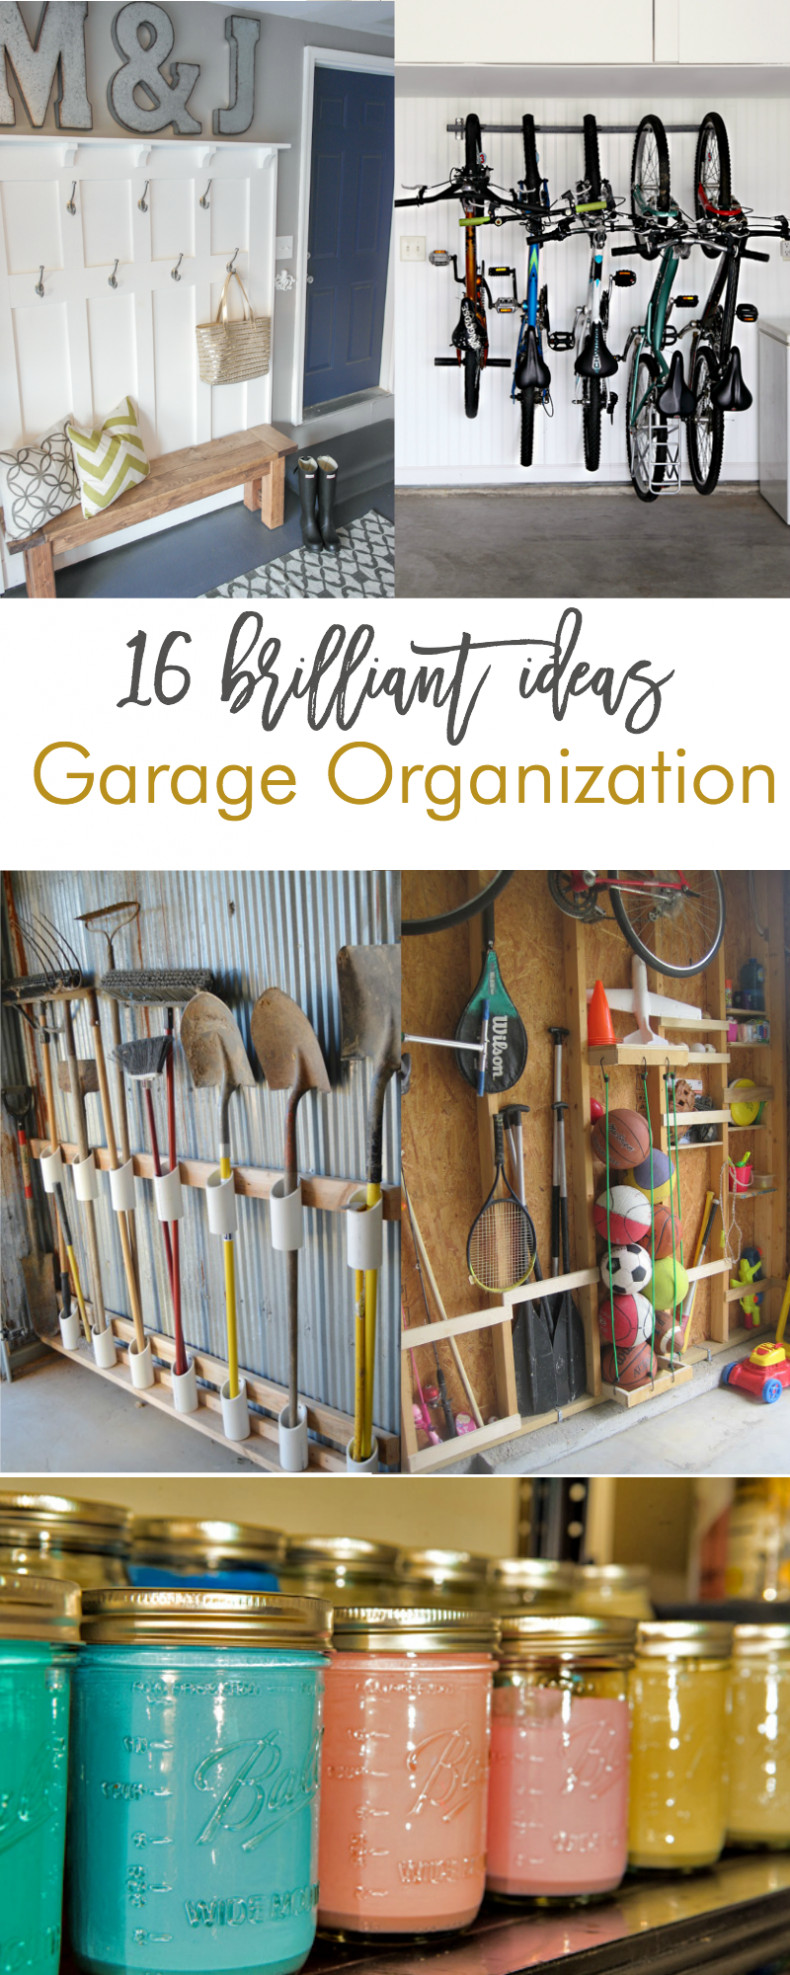 DIY Garage Organization
 16 Brilliant DIY Garage Organization Ideas